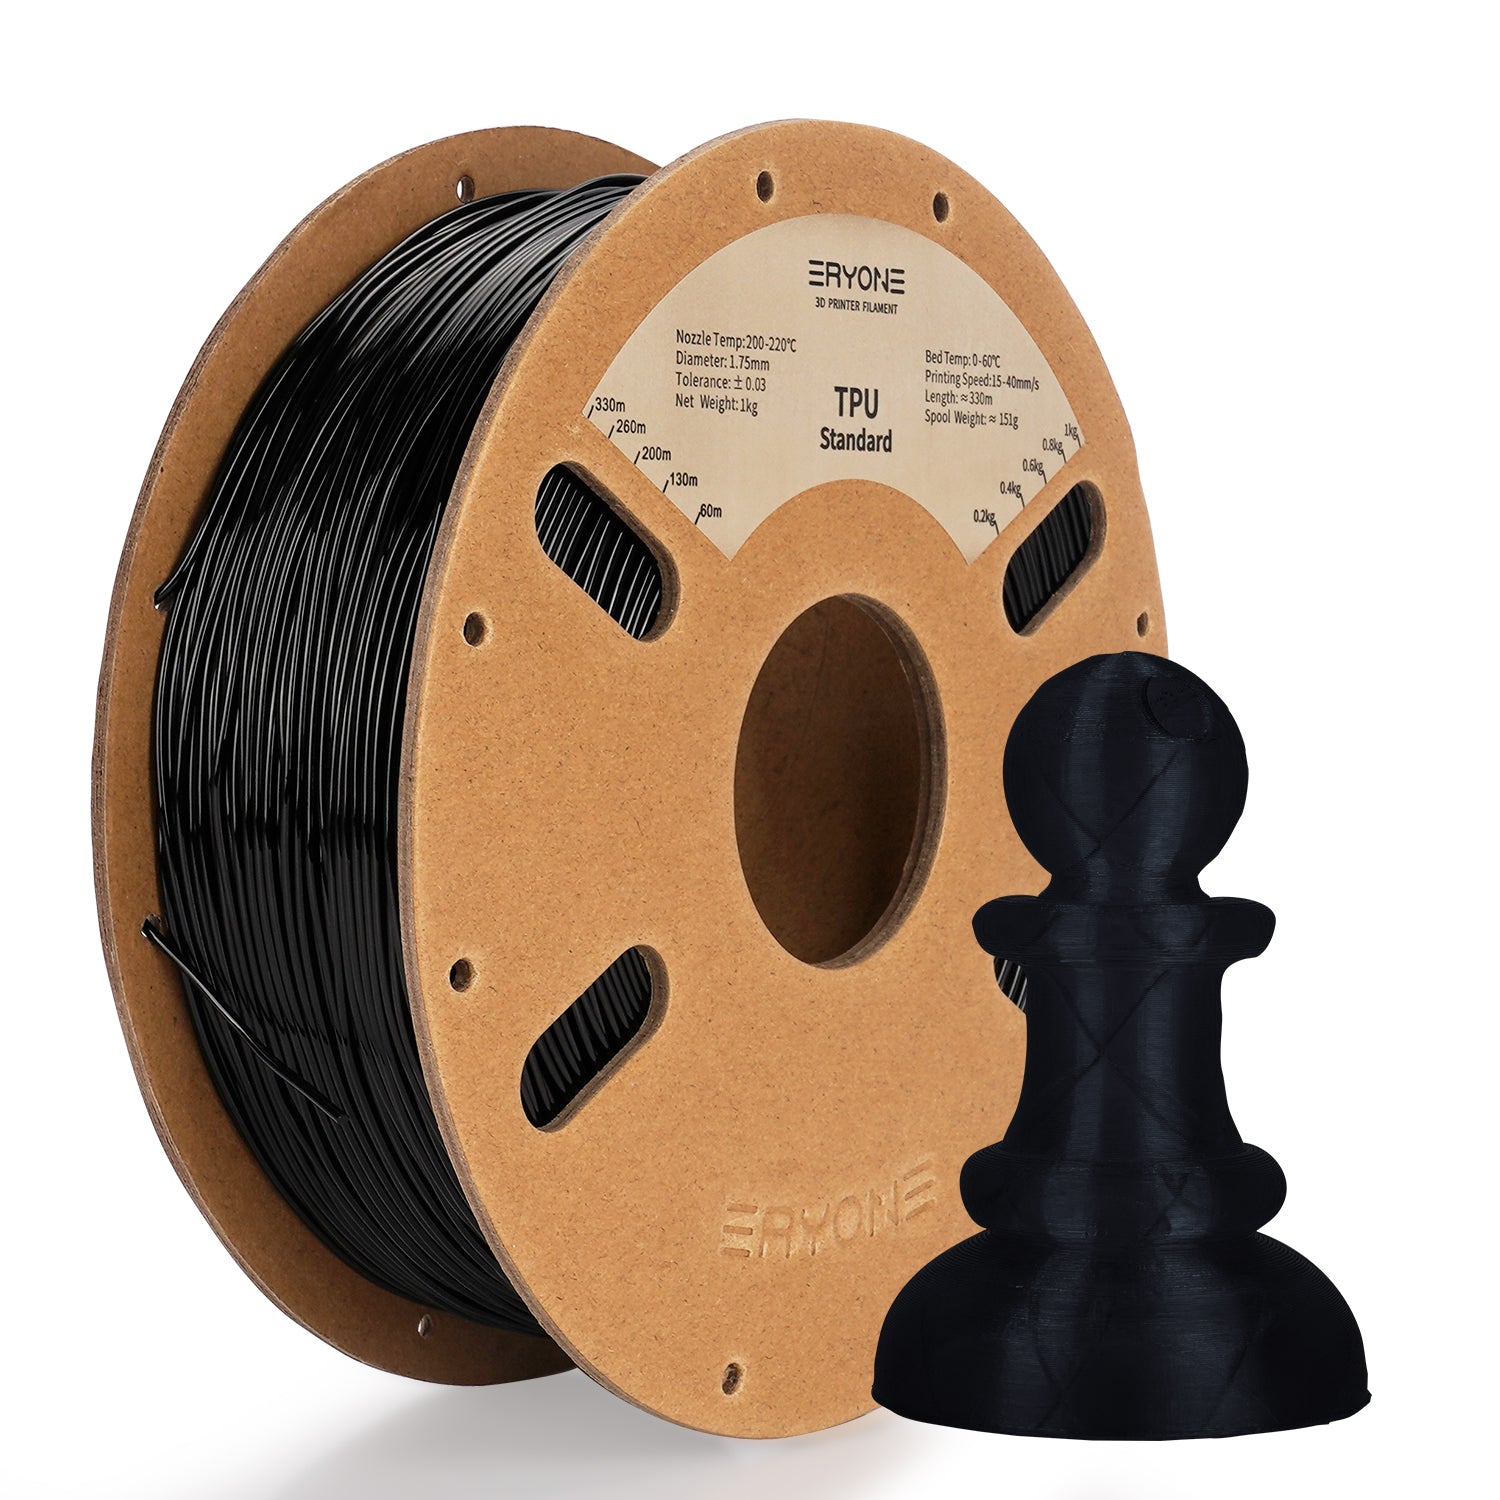 Filament for impressive 3D ERYONE 1.75mm TPU, dimensional precision +/- 0.05 mm, 0.5kg (1.1 LB) / reel 